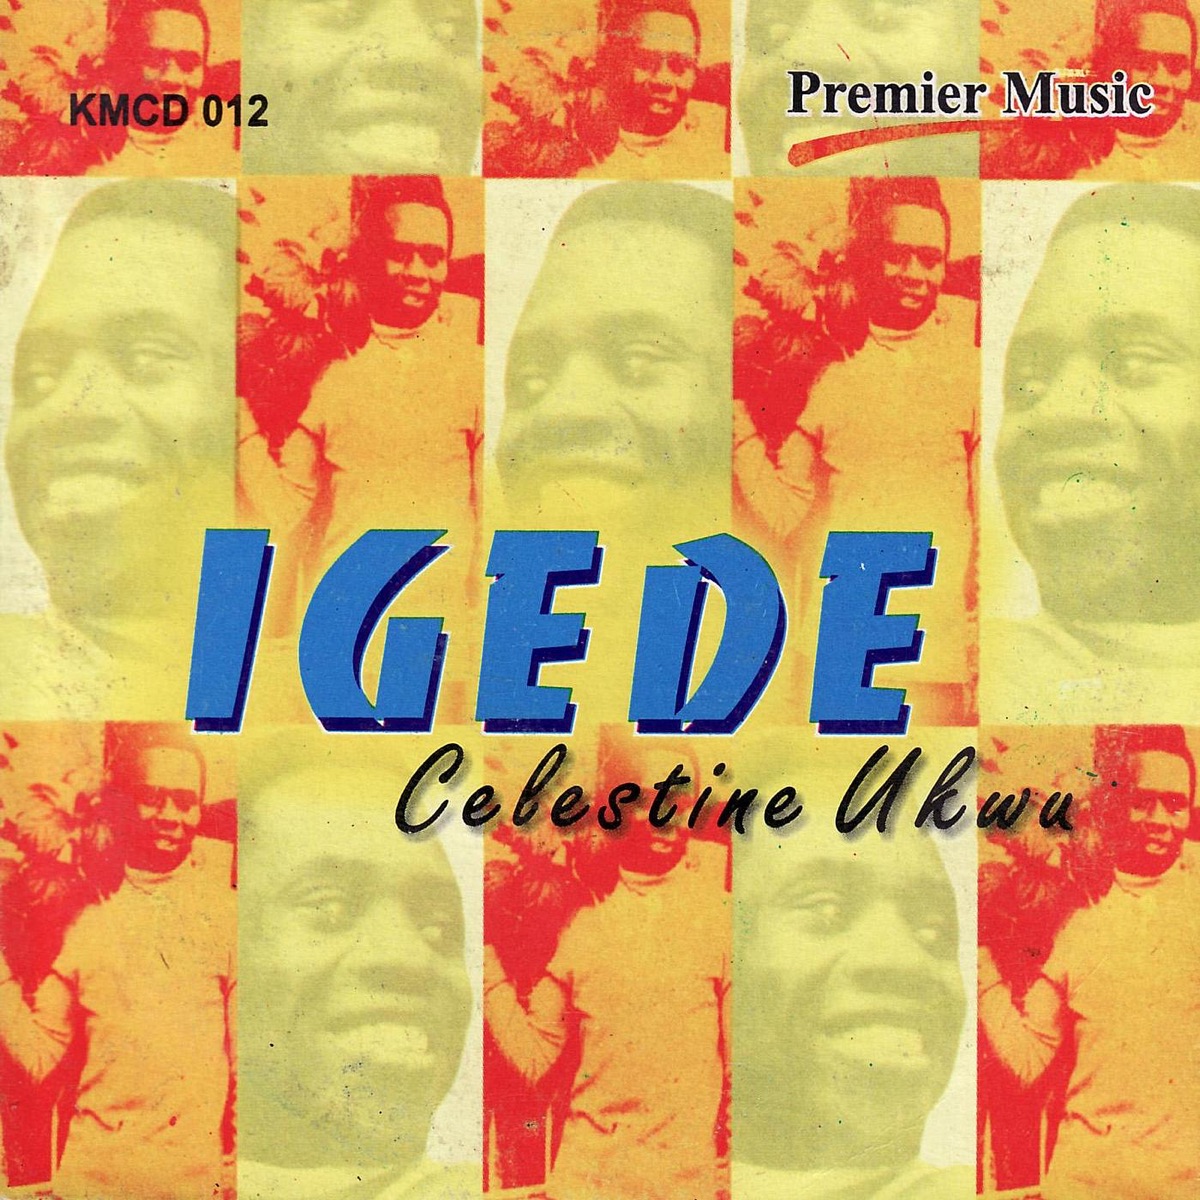 Celestine Ukwu - Igede